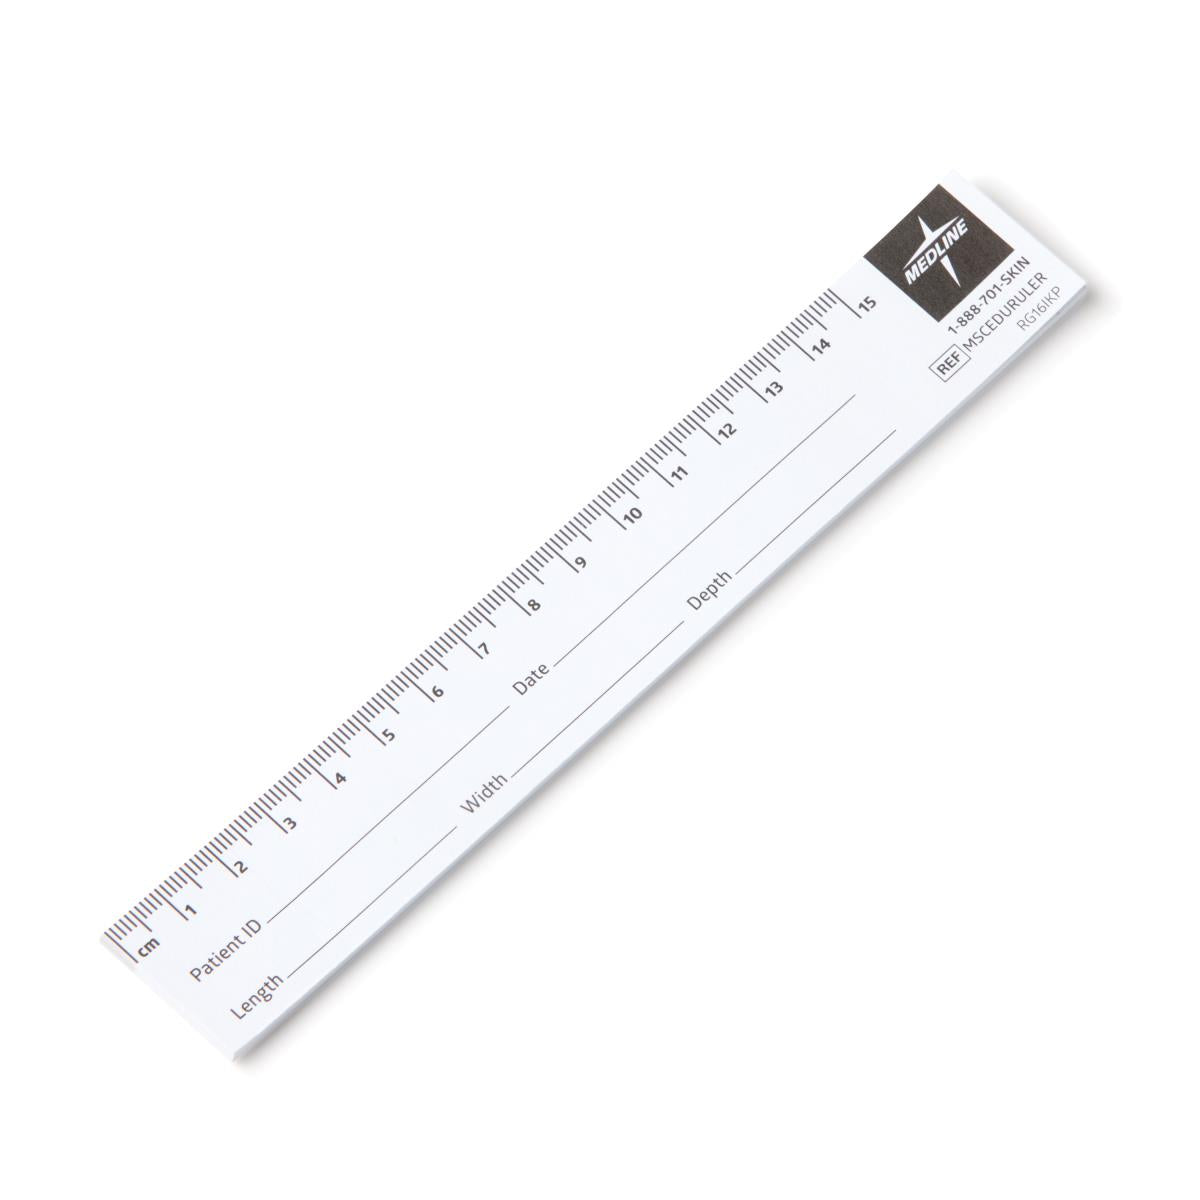 Ruler measurements